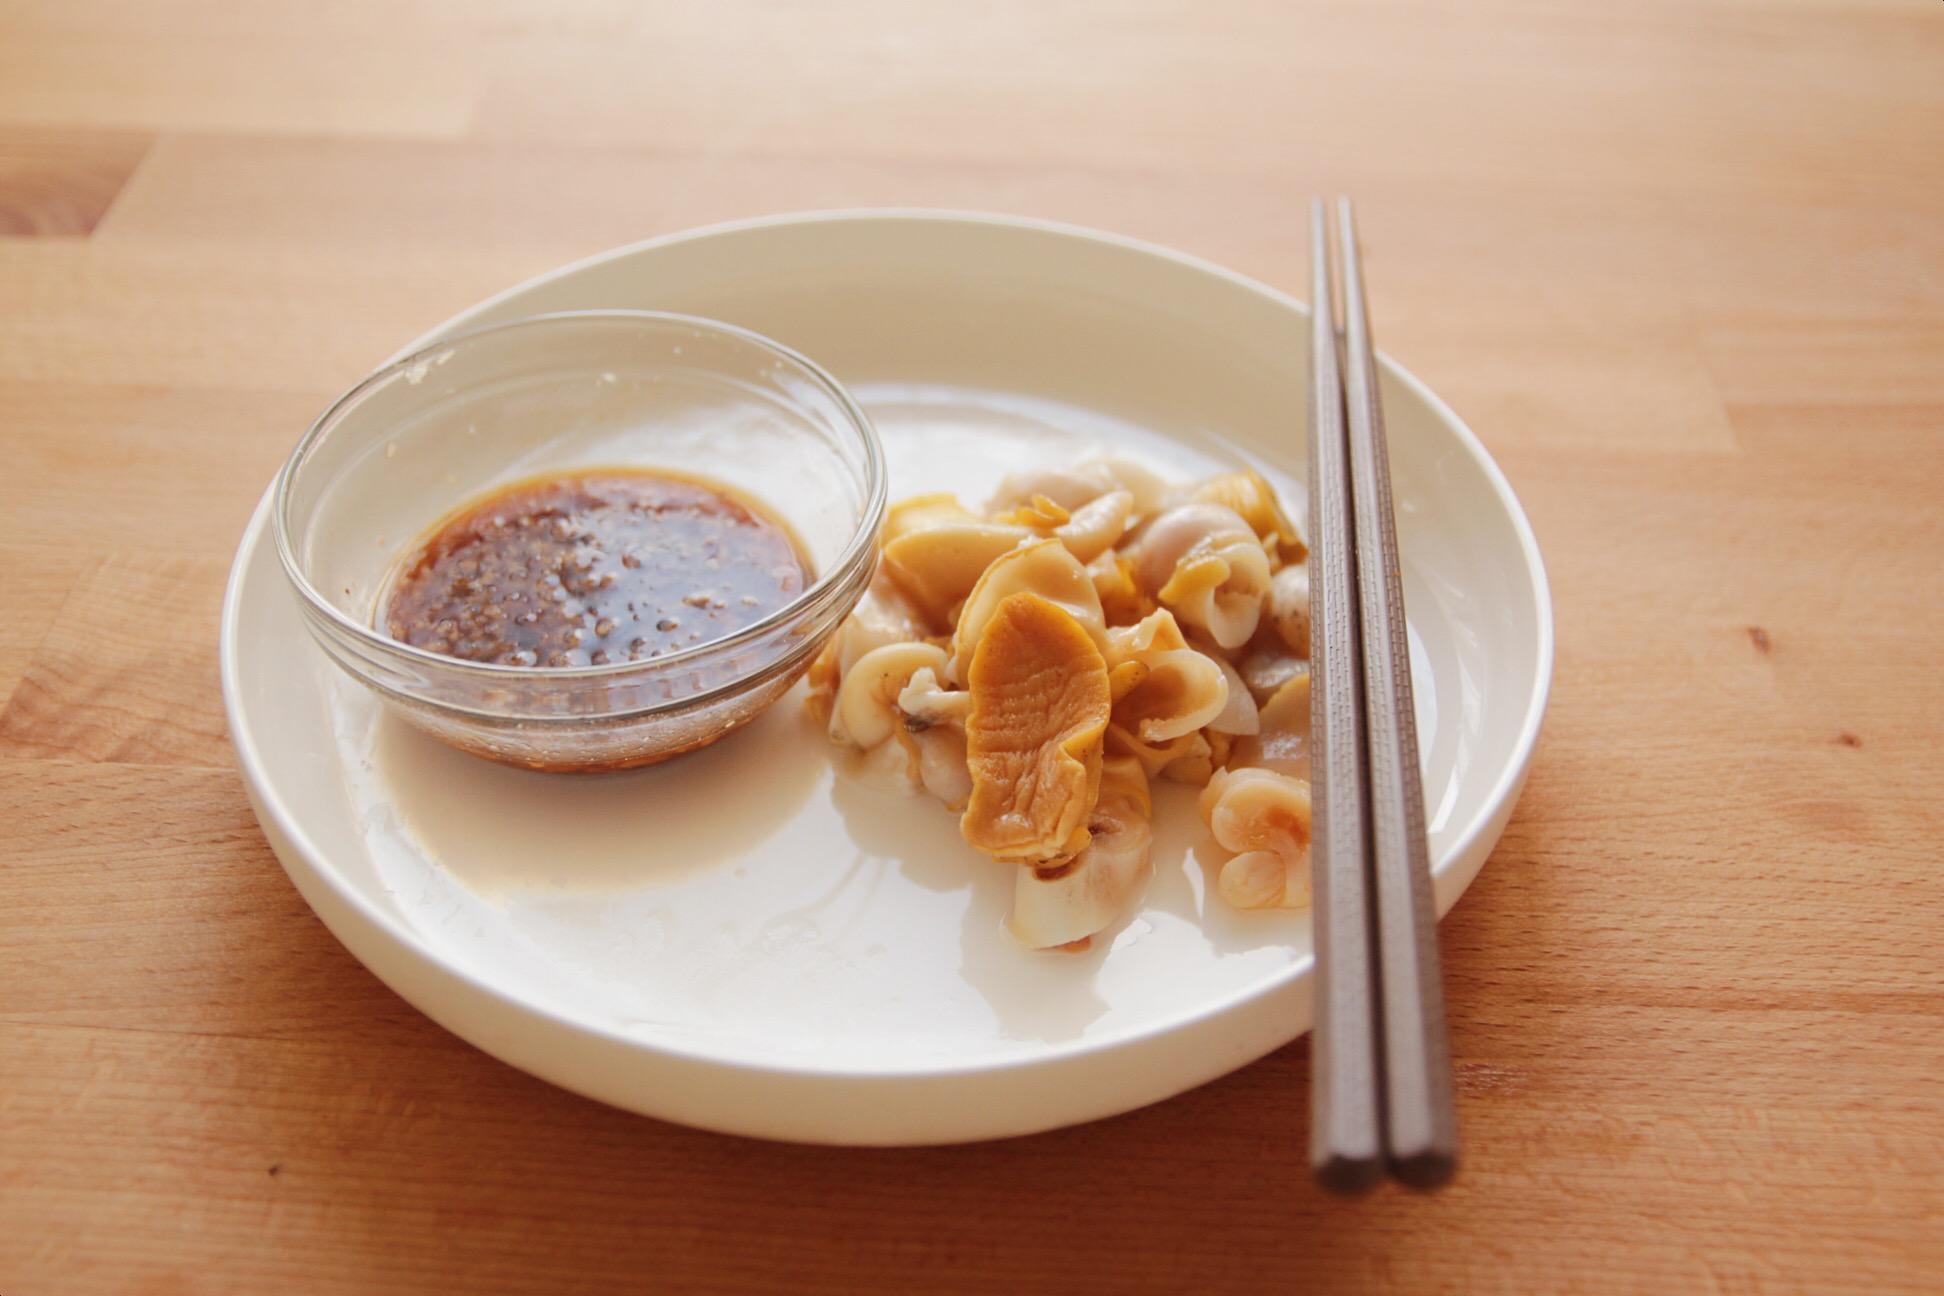 复刻传统福州菜|蒜头酱 下酒小菜|红螺的做法